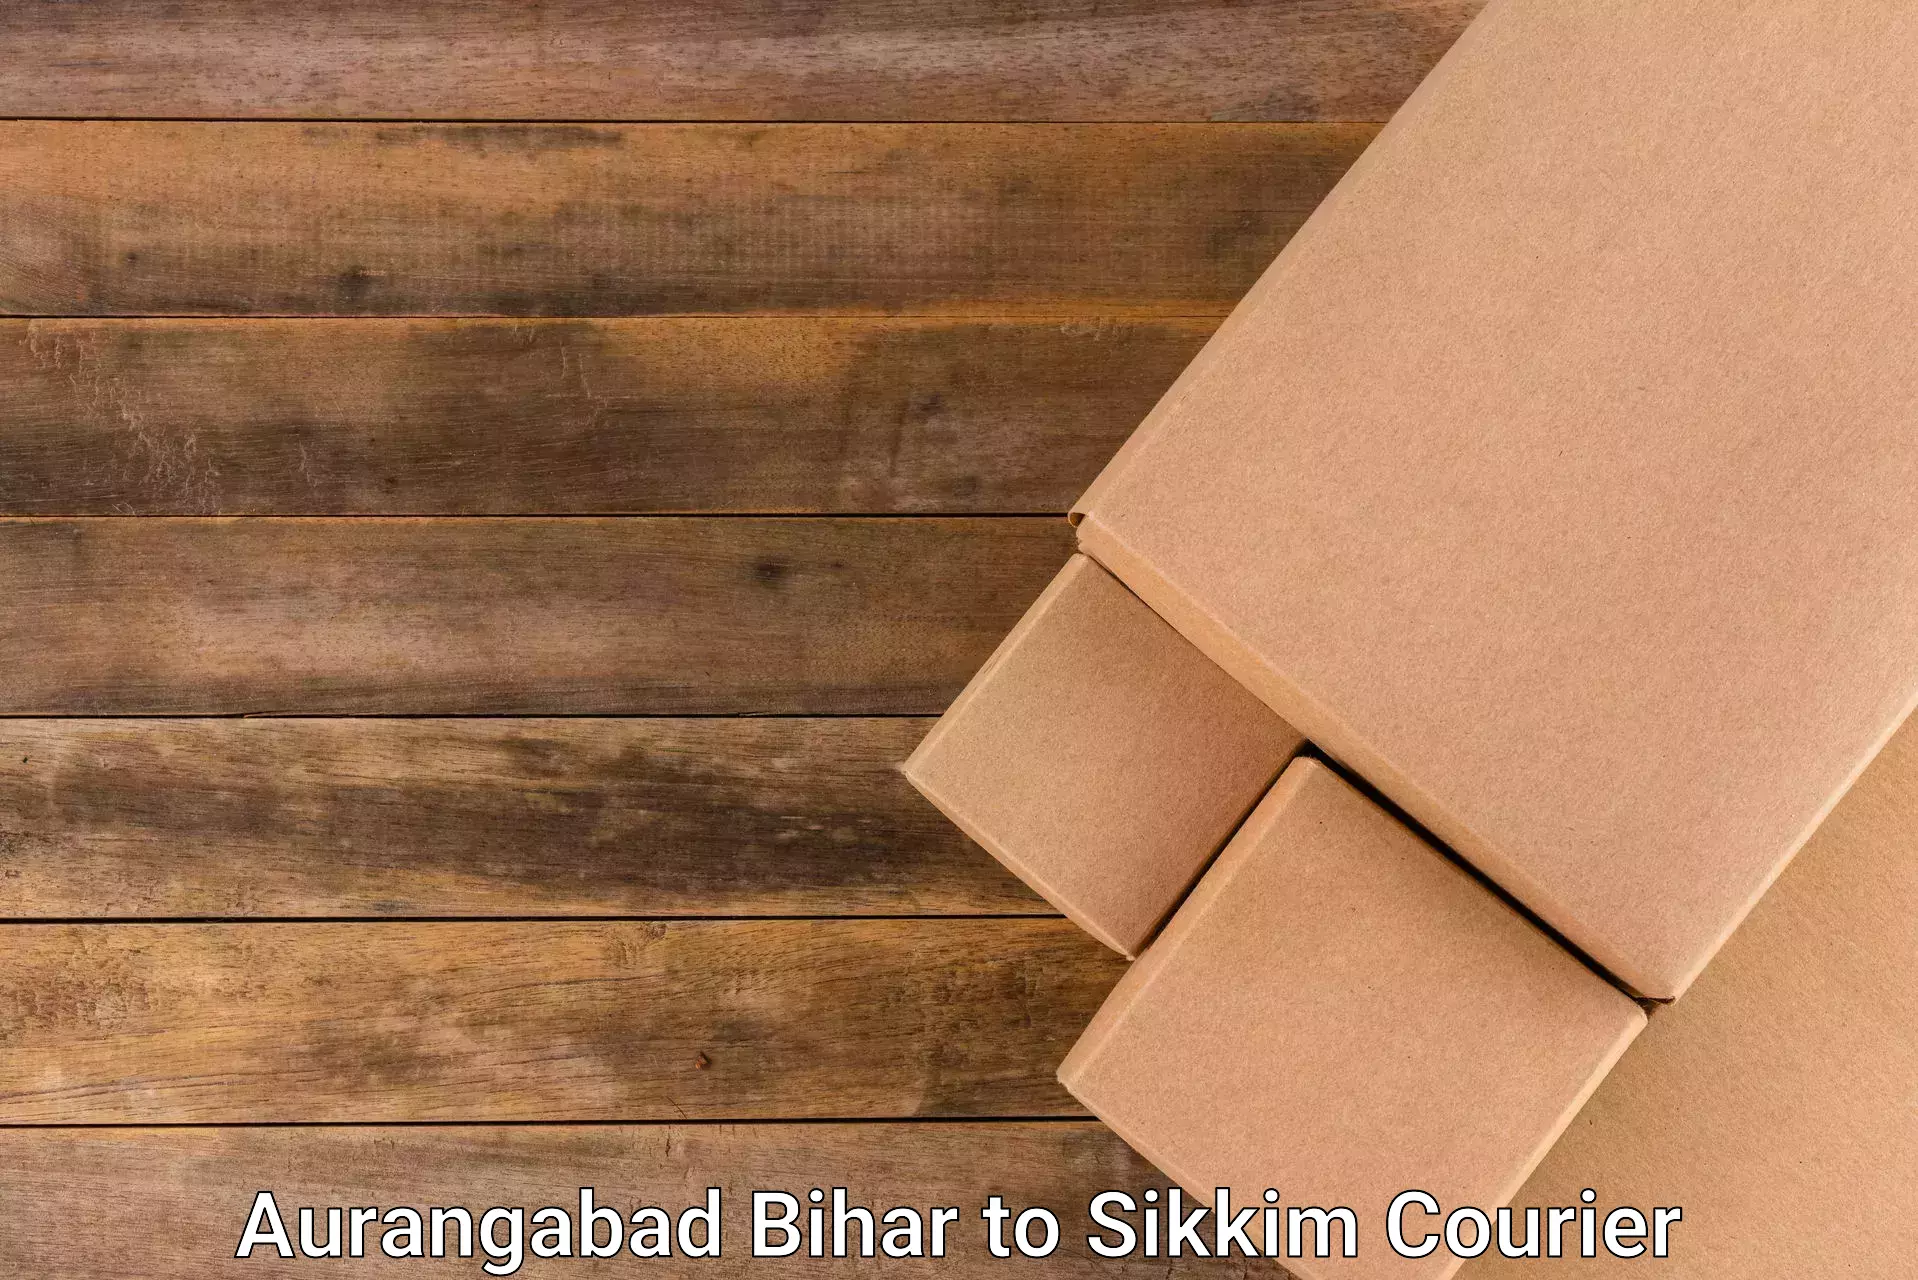 Courier app Aurangabad Bihar to West Sikkim